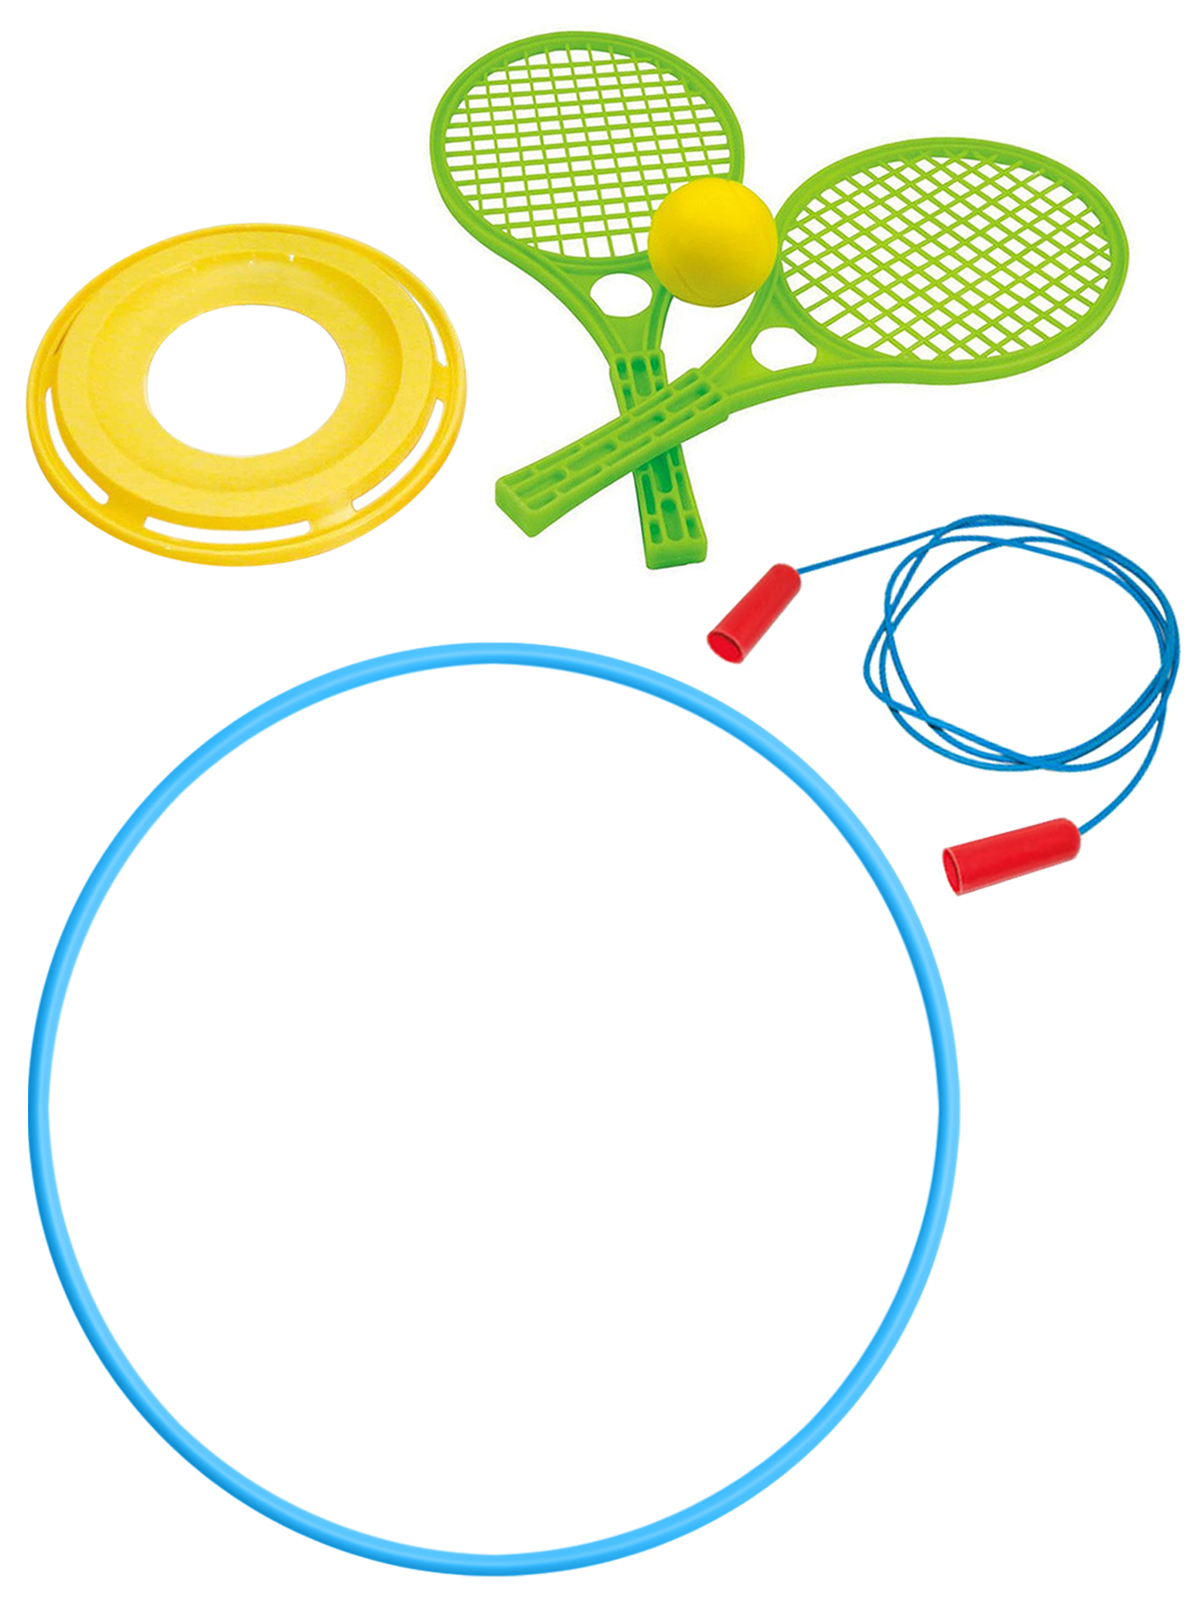 фото Уличные игры zebratoys летающий диск+набор для тенниса+скакалка спорт.+обруч 80 см голубой